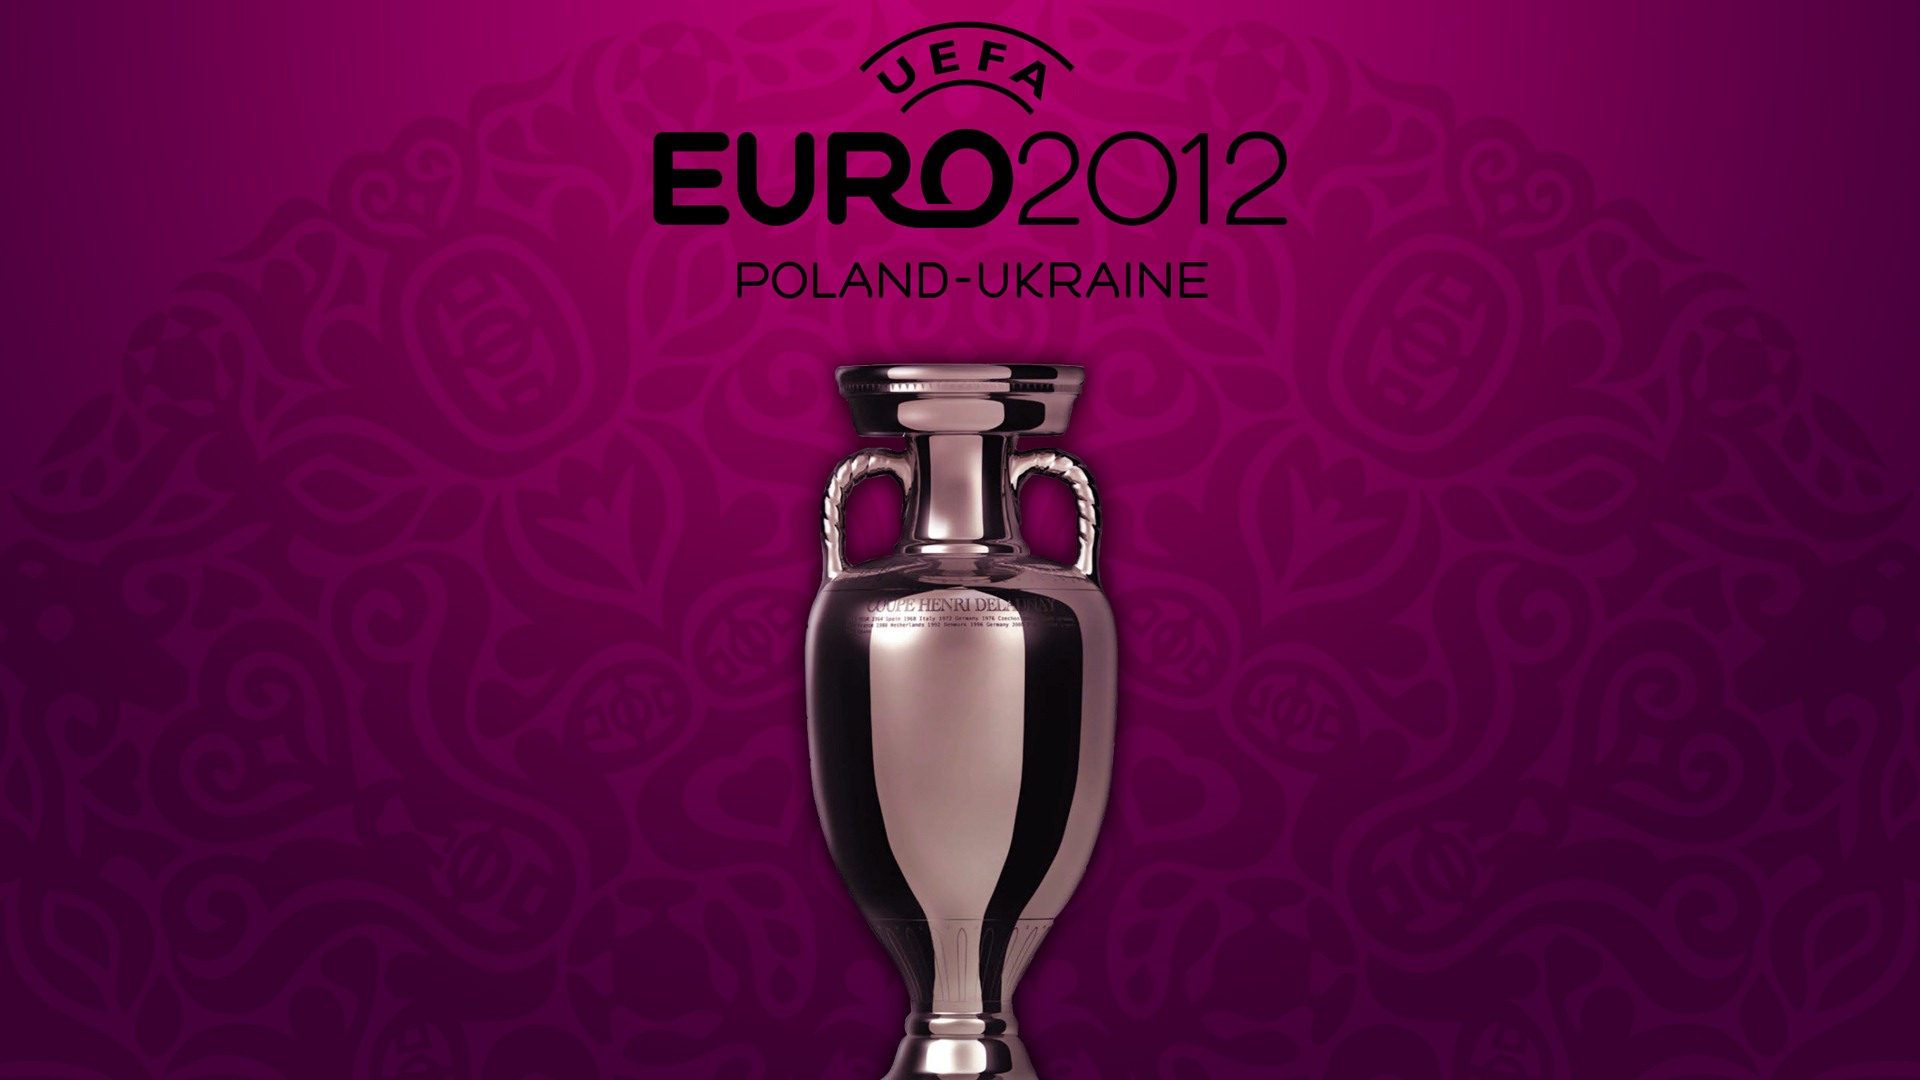 UEFA EURO 2012 欧洲足球锦标赛 高清壁纸(二)16 - 1920x1080